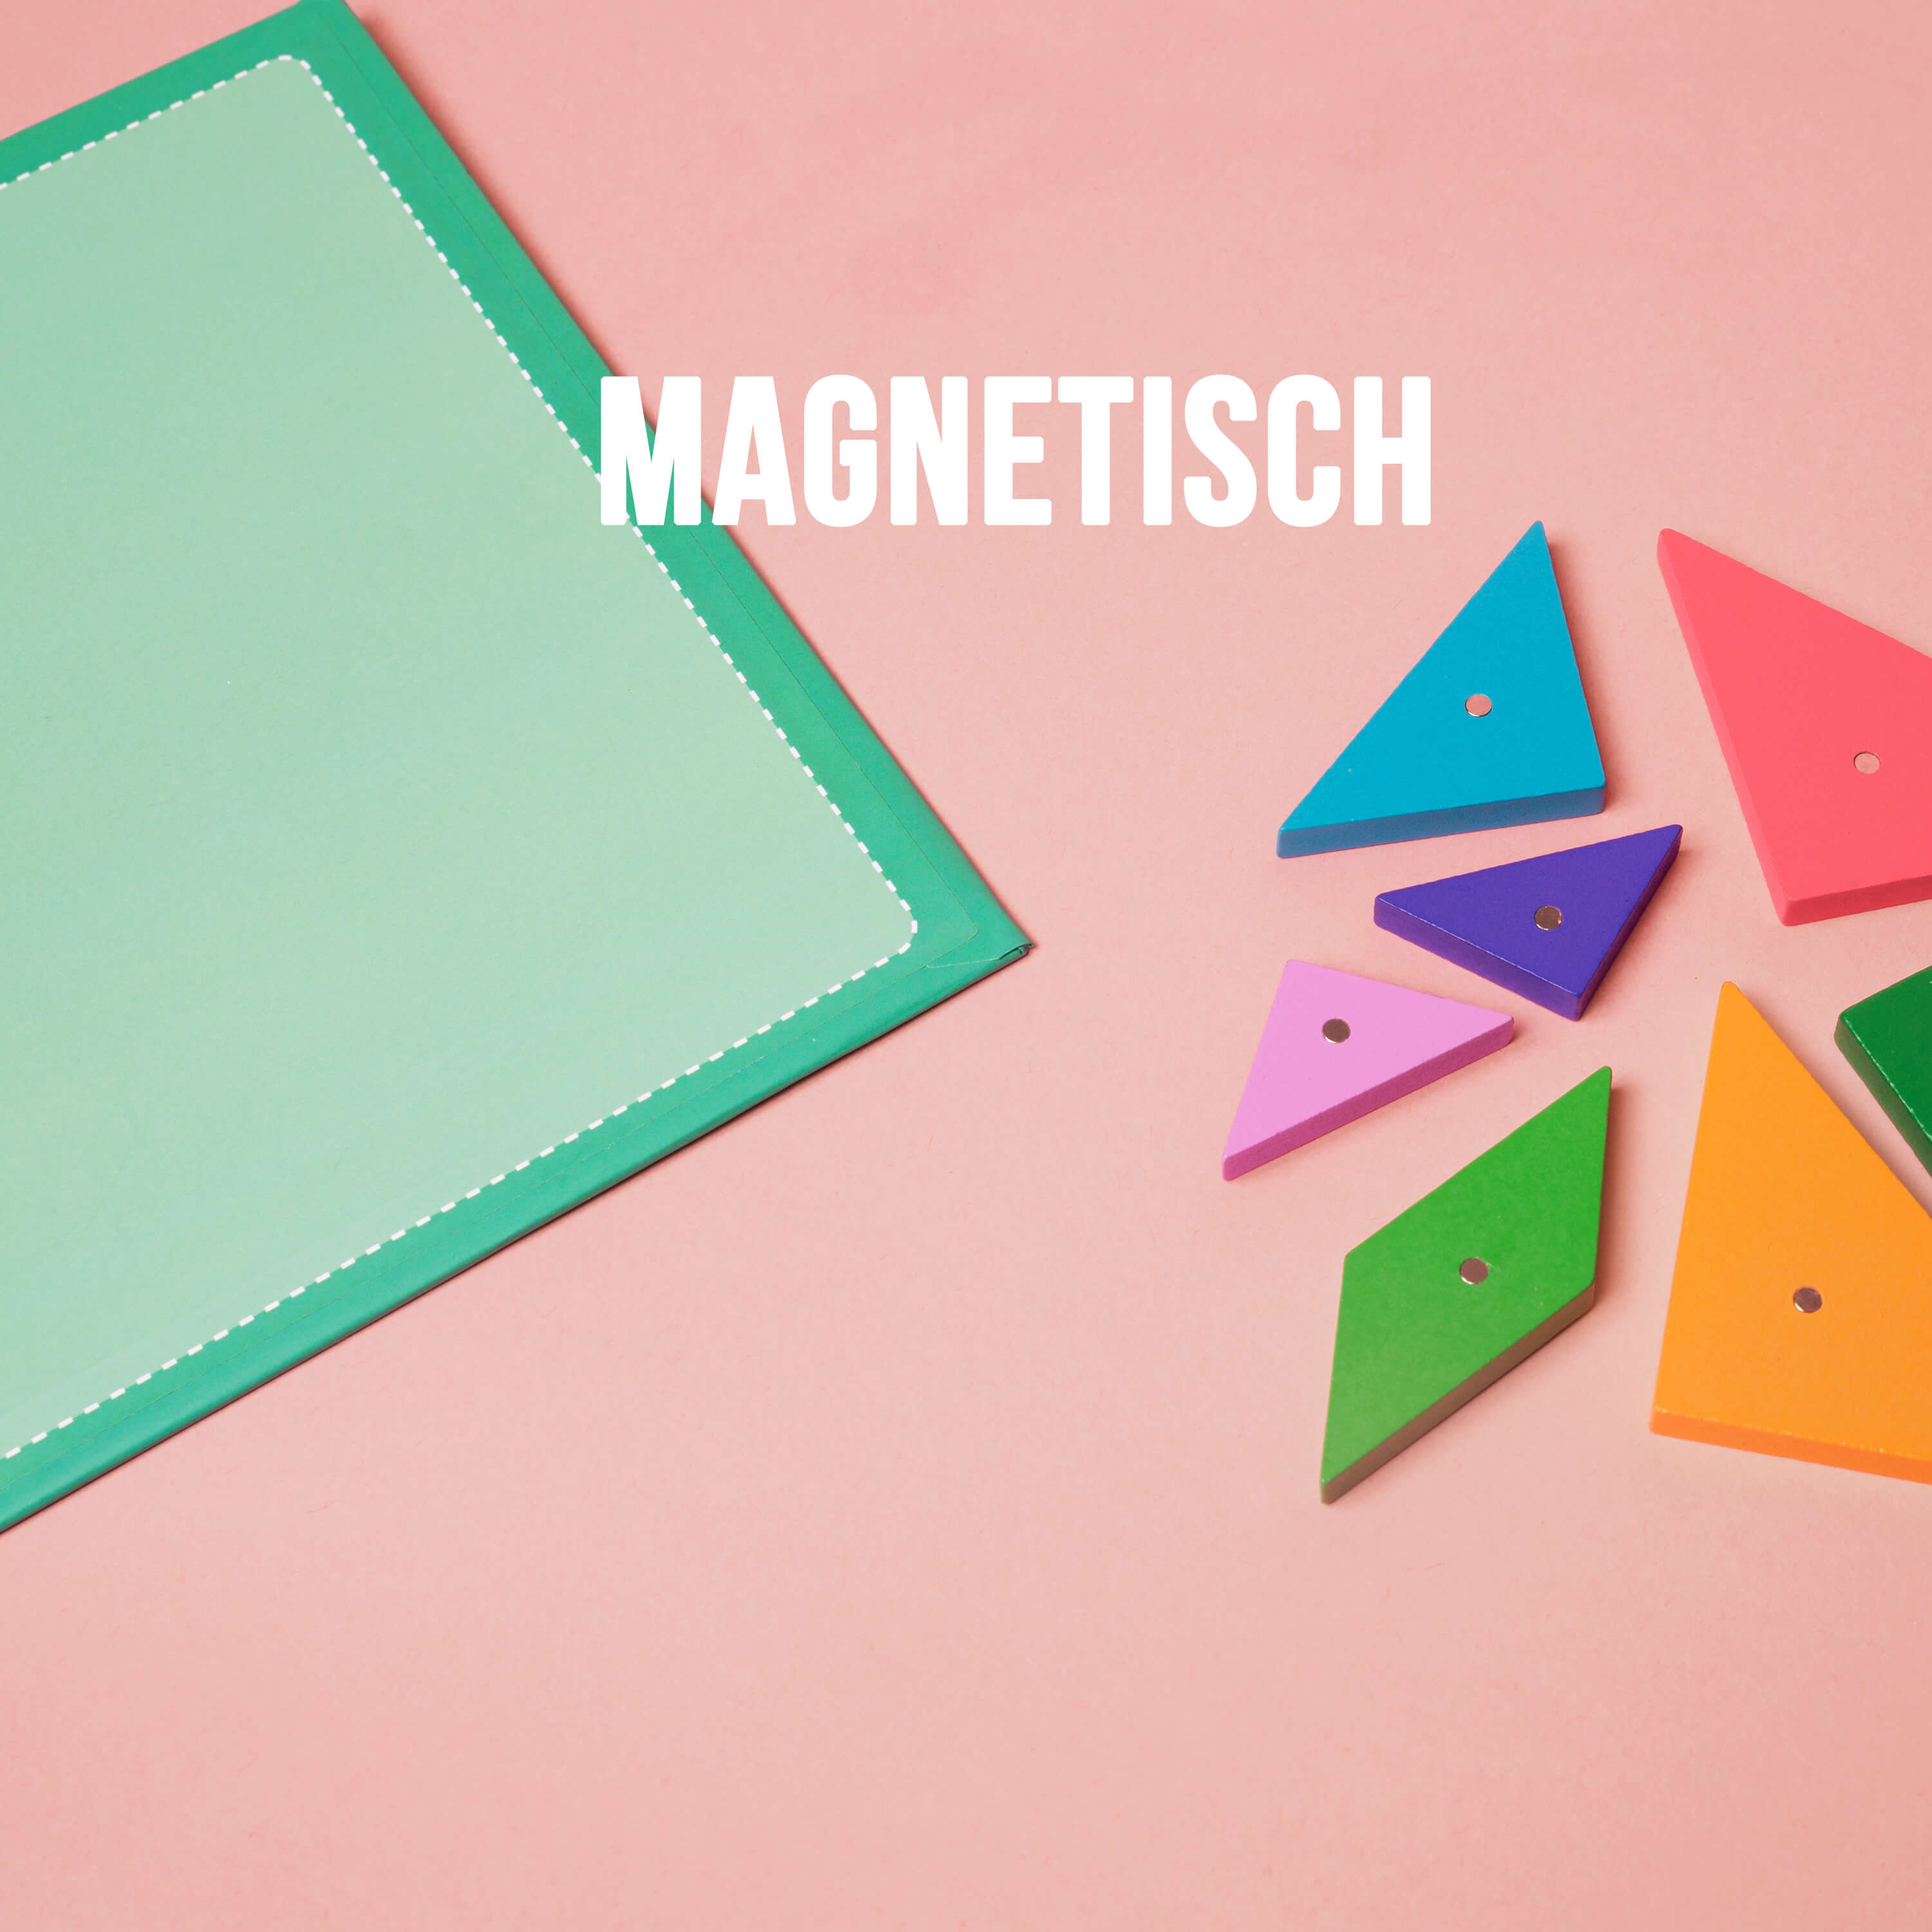 Magnetisches Tangram-Puzzle